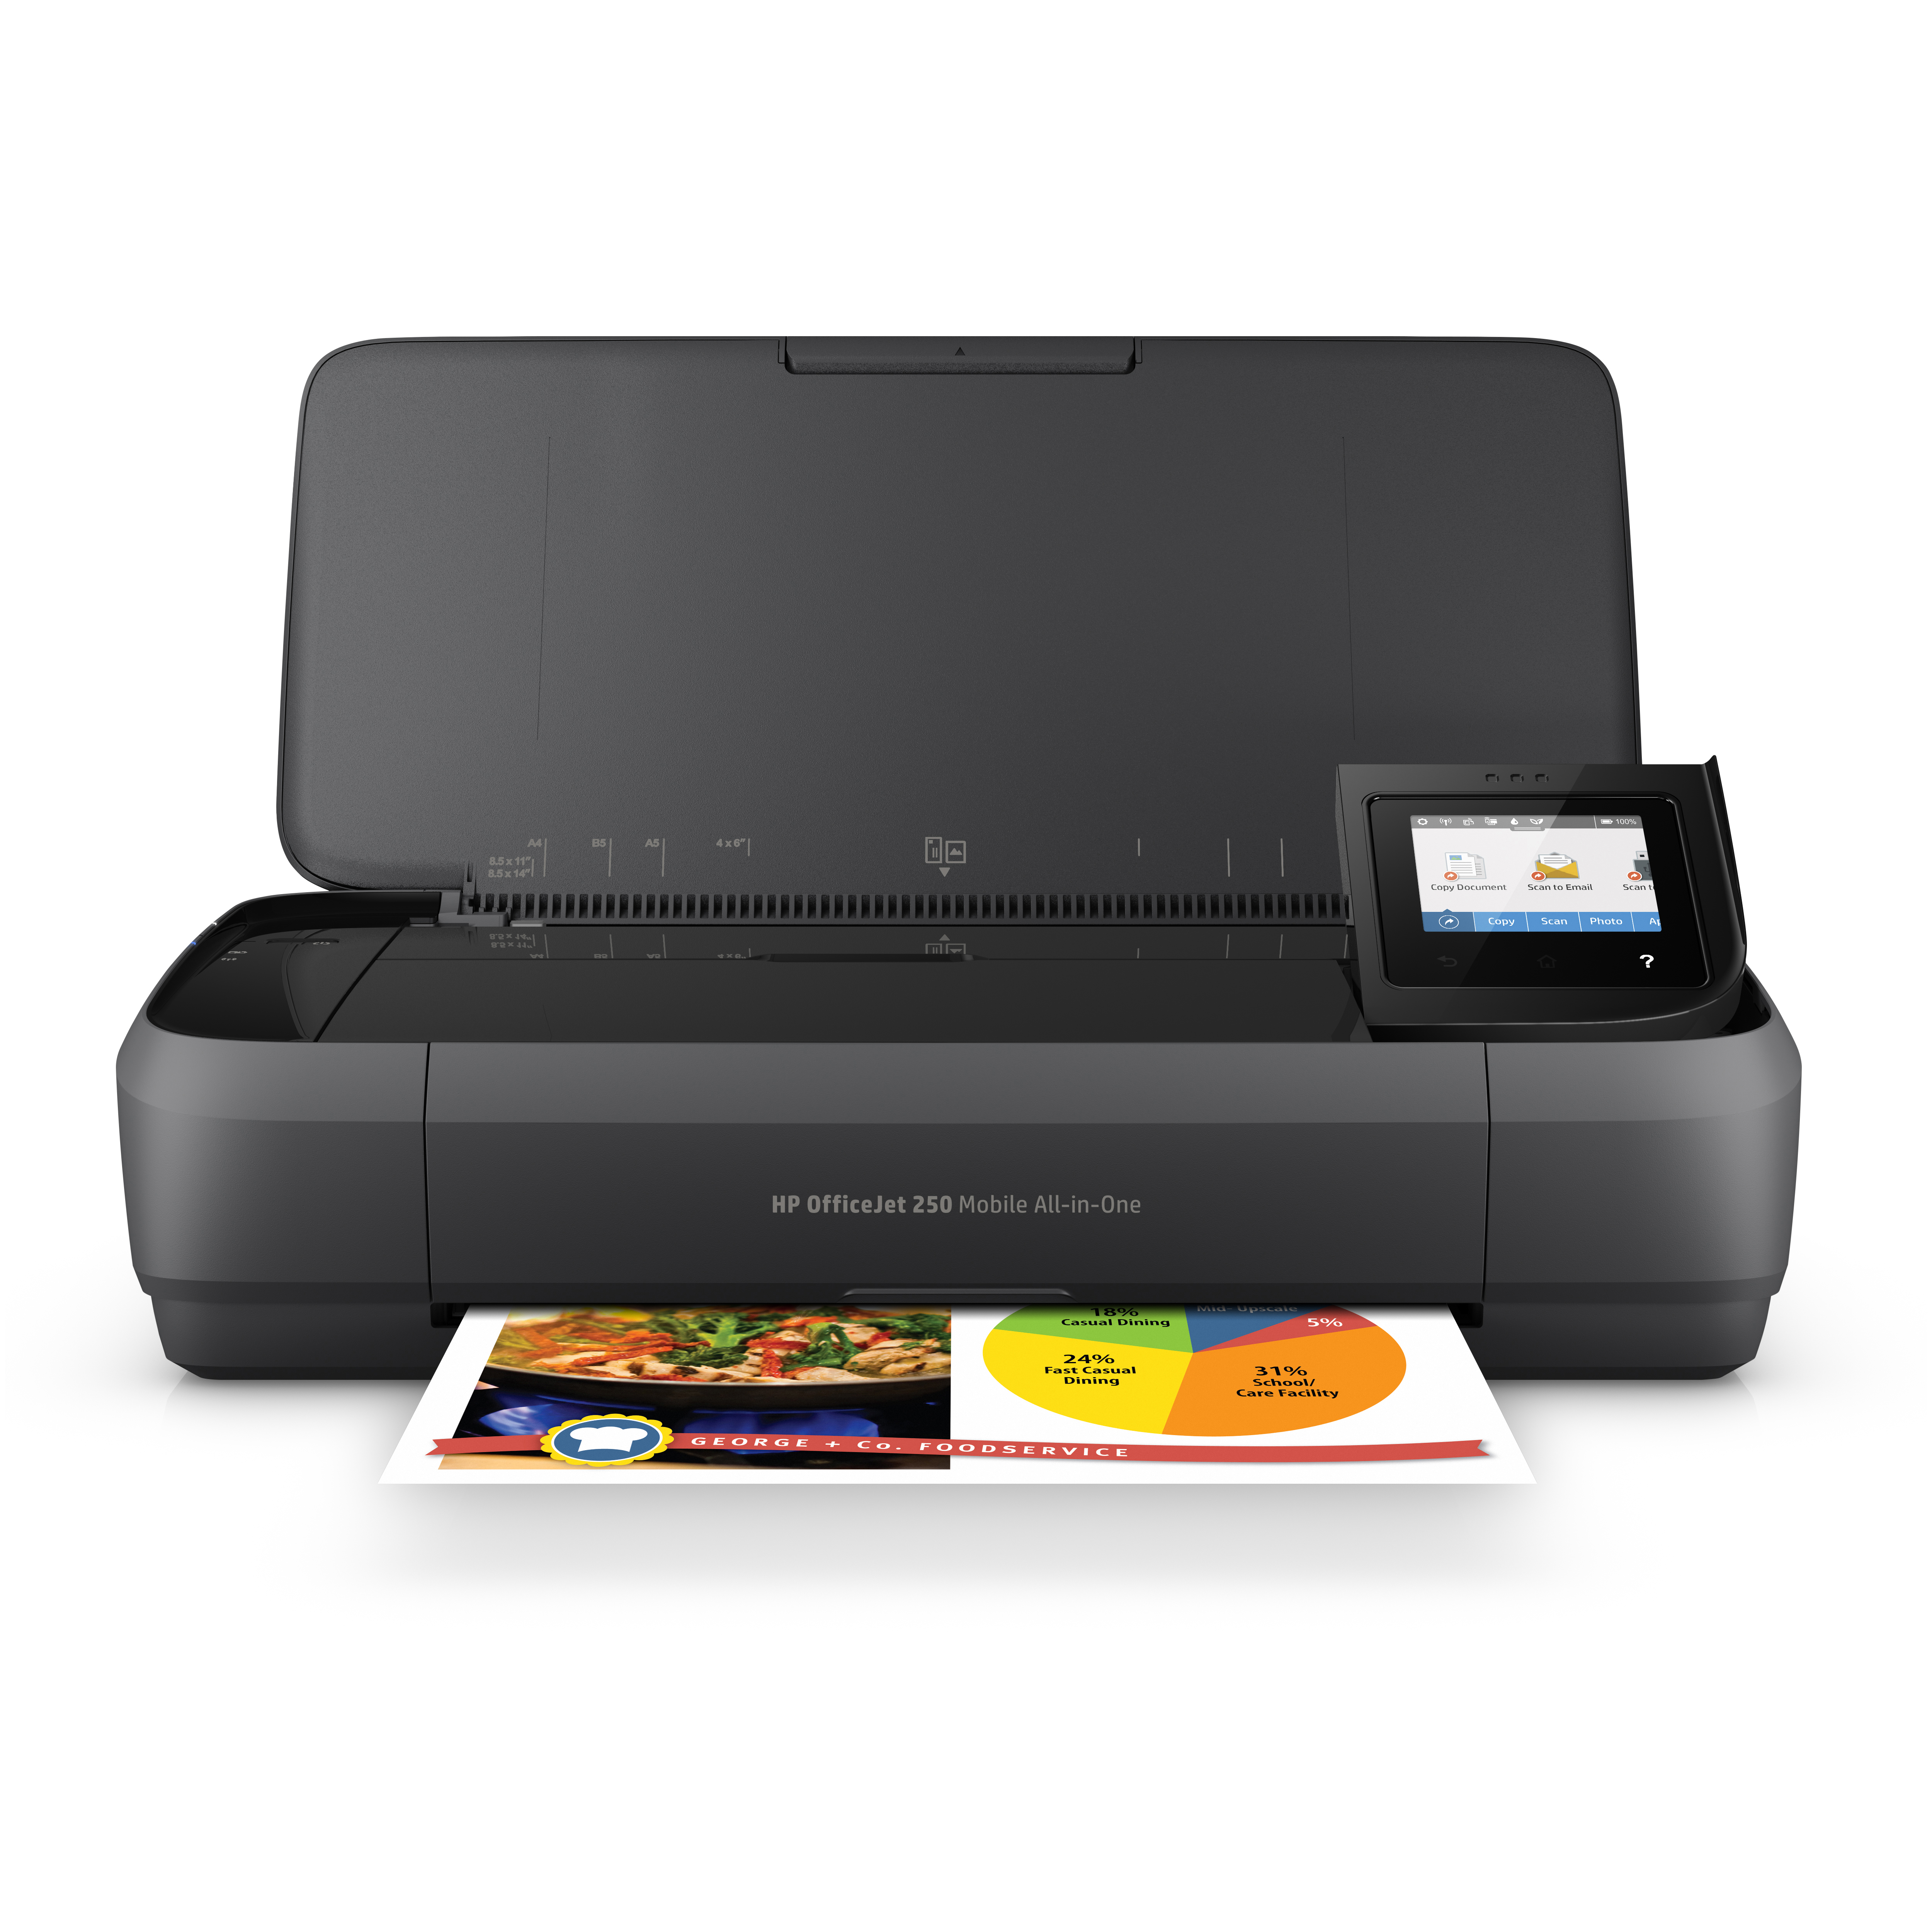 WLAN Mobil Multifunktionsdrucker HP Tintenstrahldruck 3-in-1 250 OfficeJet